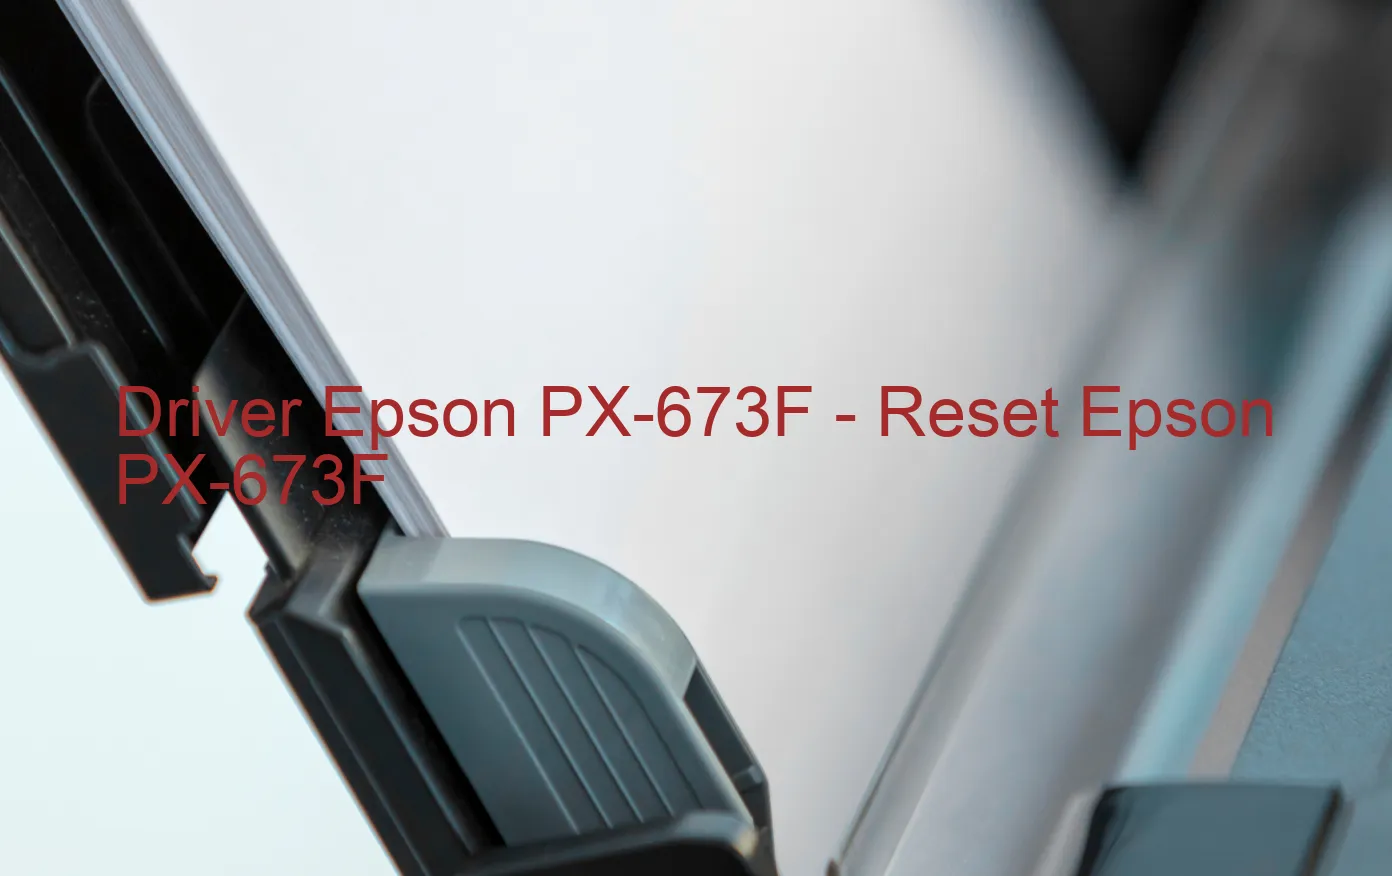 Epson PX-673Fのドライバー、Epson PX-673Fのリセットソフトウェア